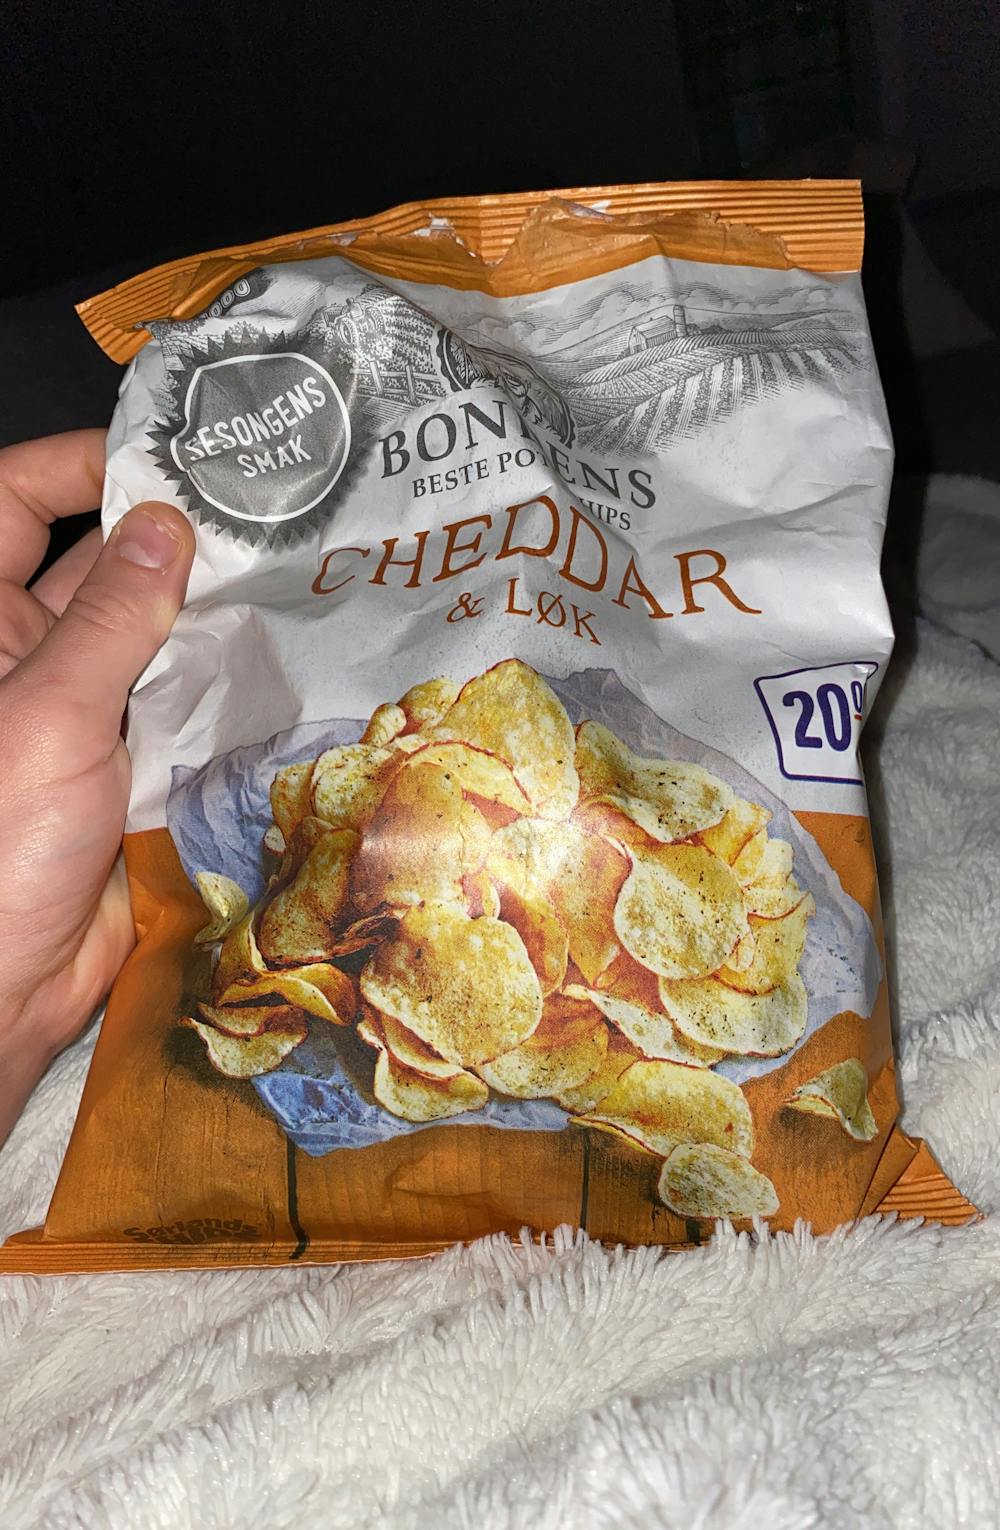 Cheddar & løk, Bondens beste potetchips